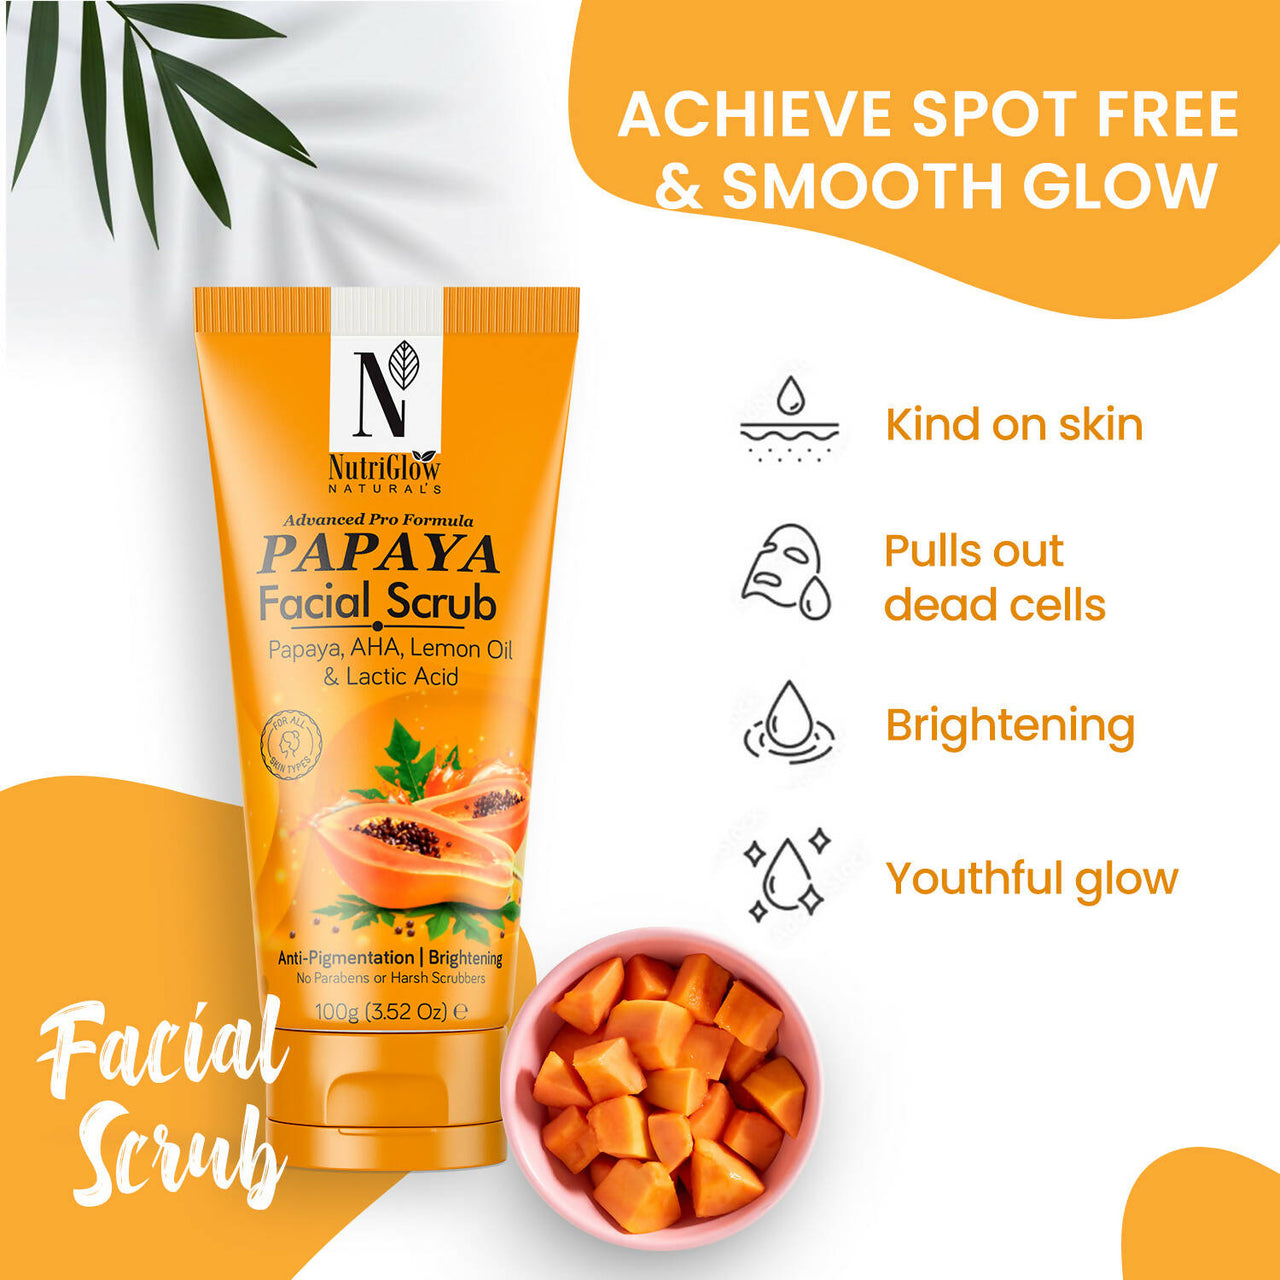 NutriGlow NATURAL'S Papaya Facial Scrub - Distacart